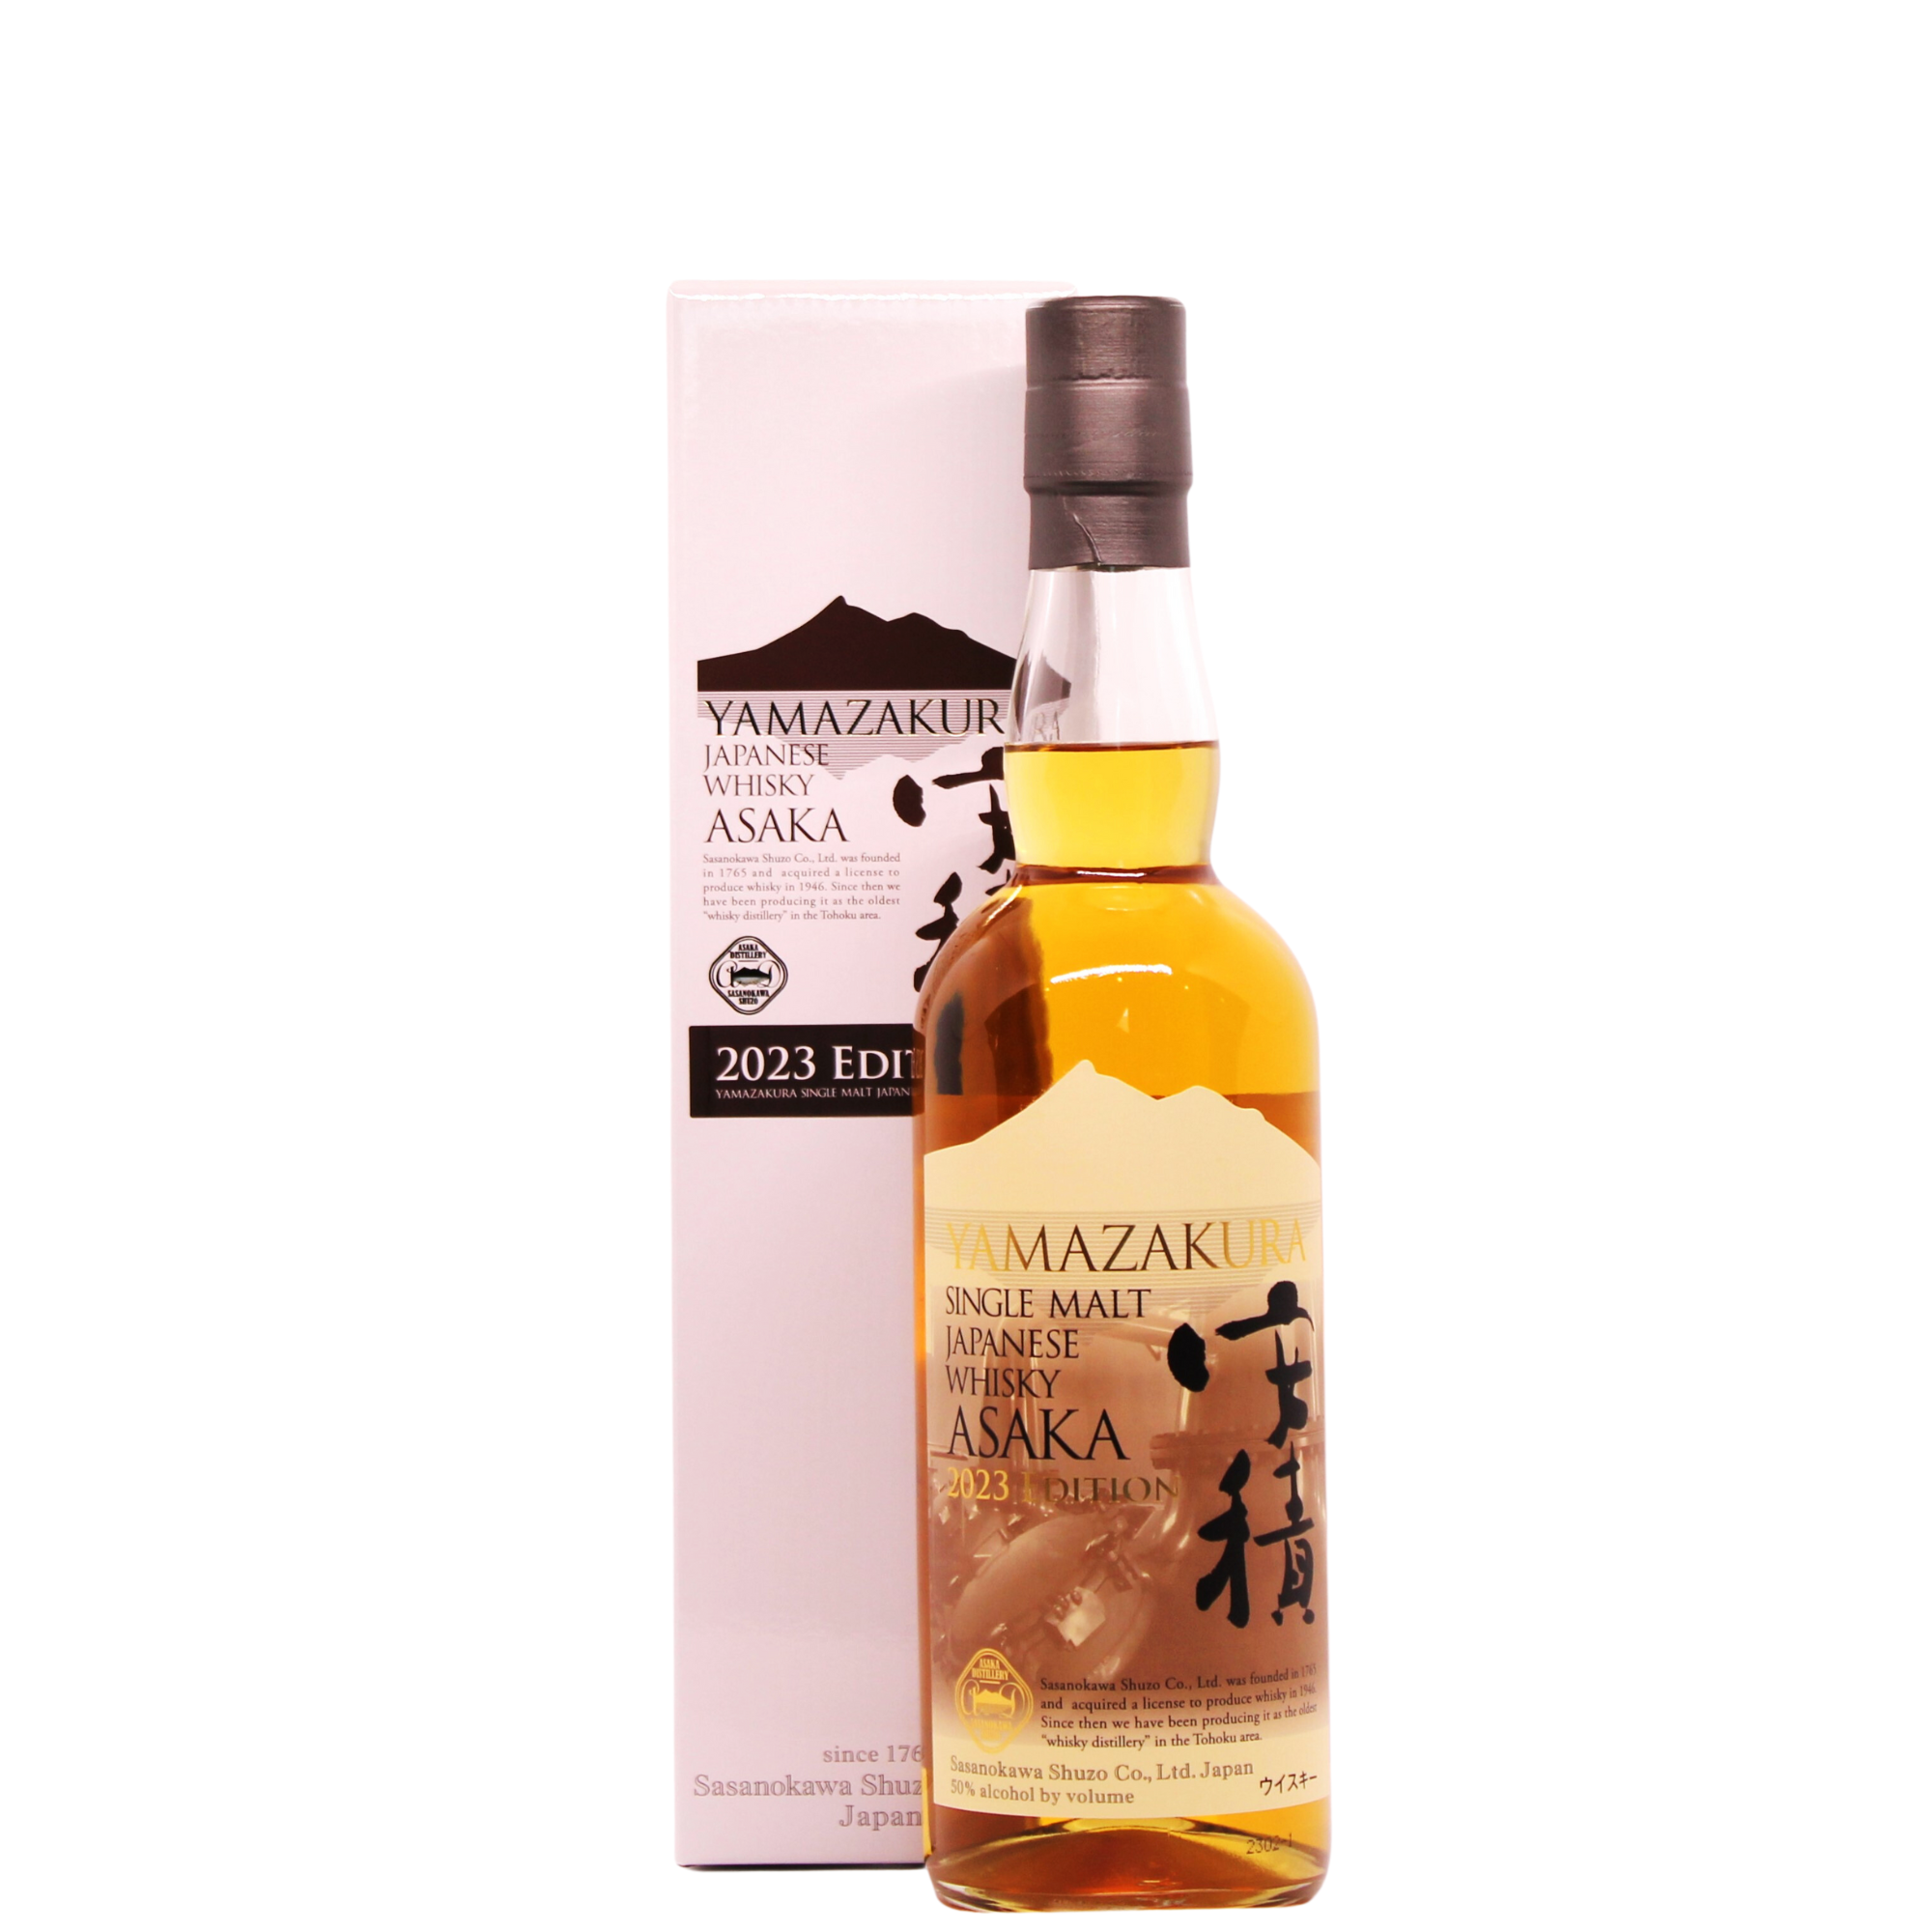 YAMAZAKURA Single Malt Japanese Whisky ASAKA Distillery 2023 EDITION